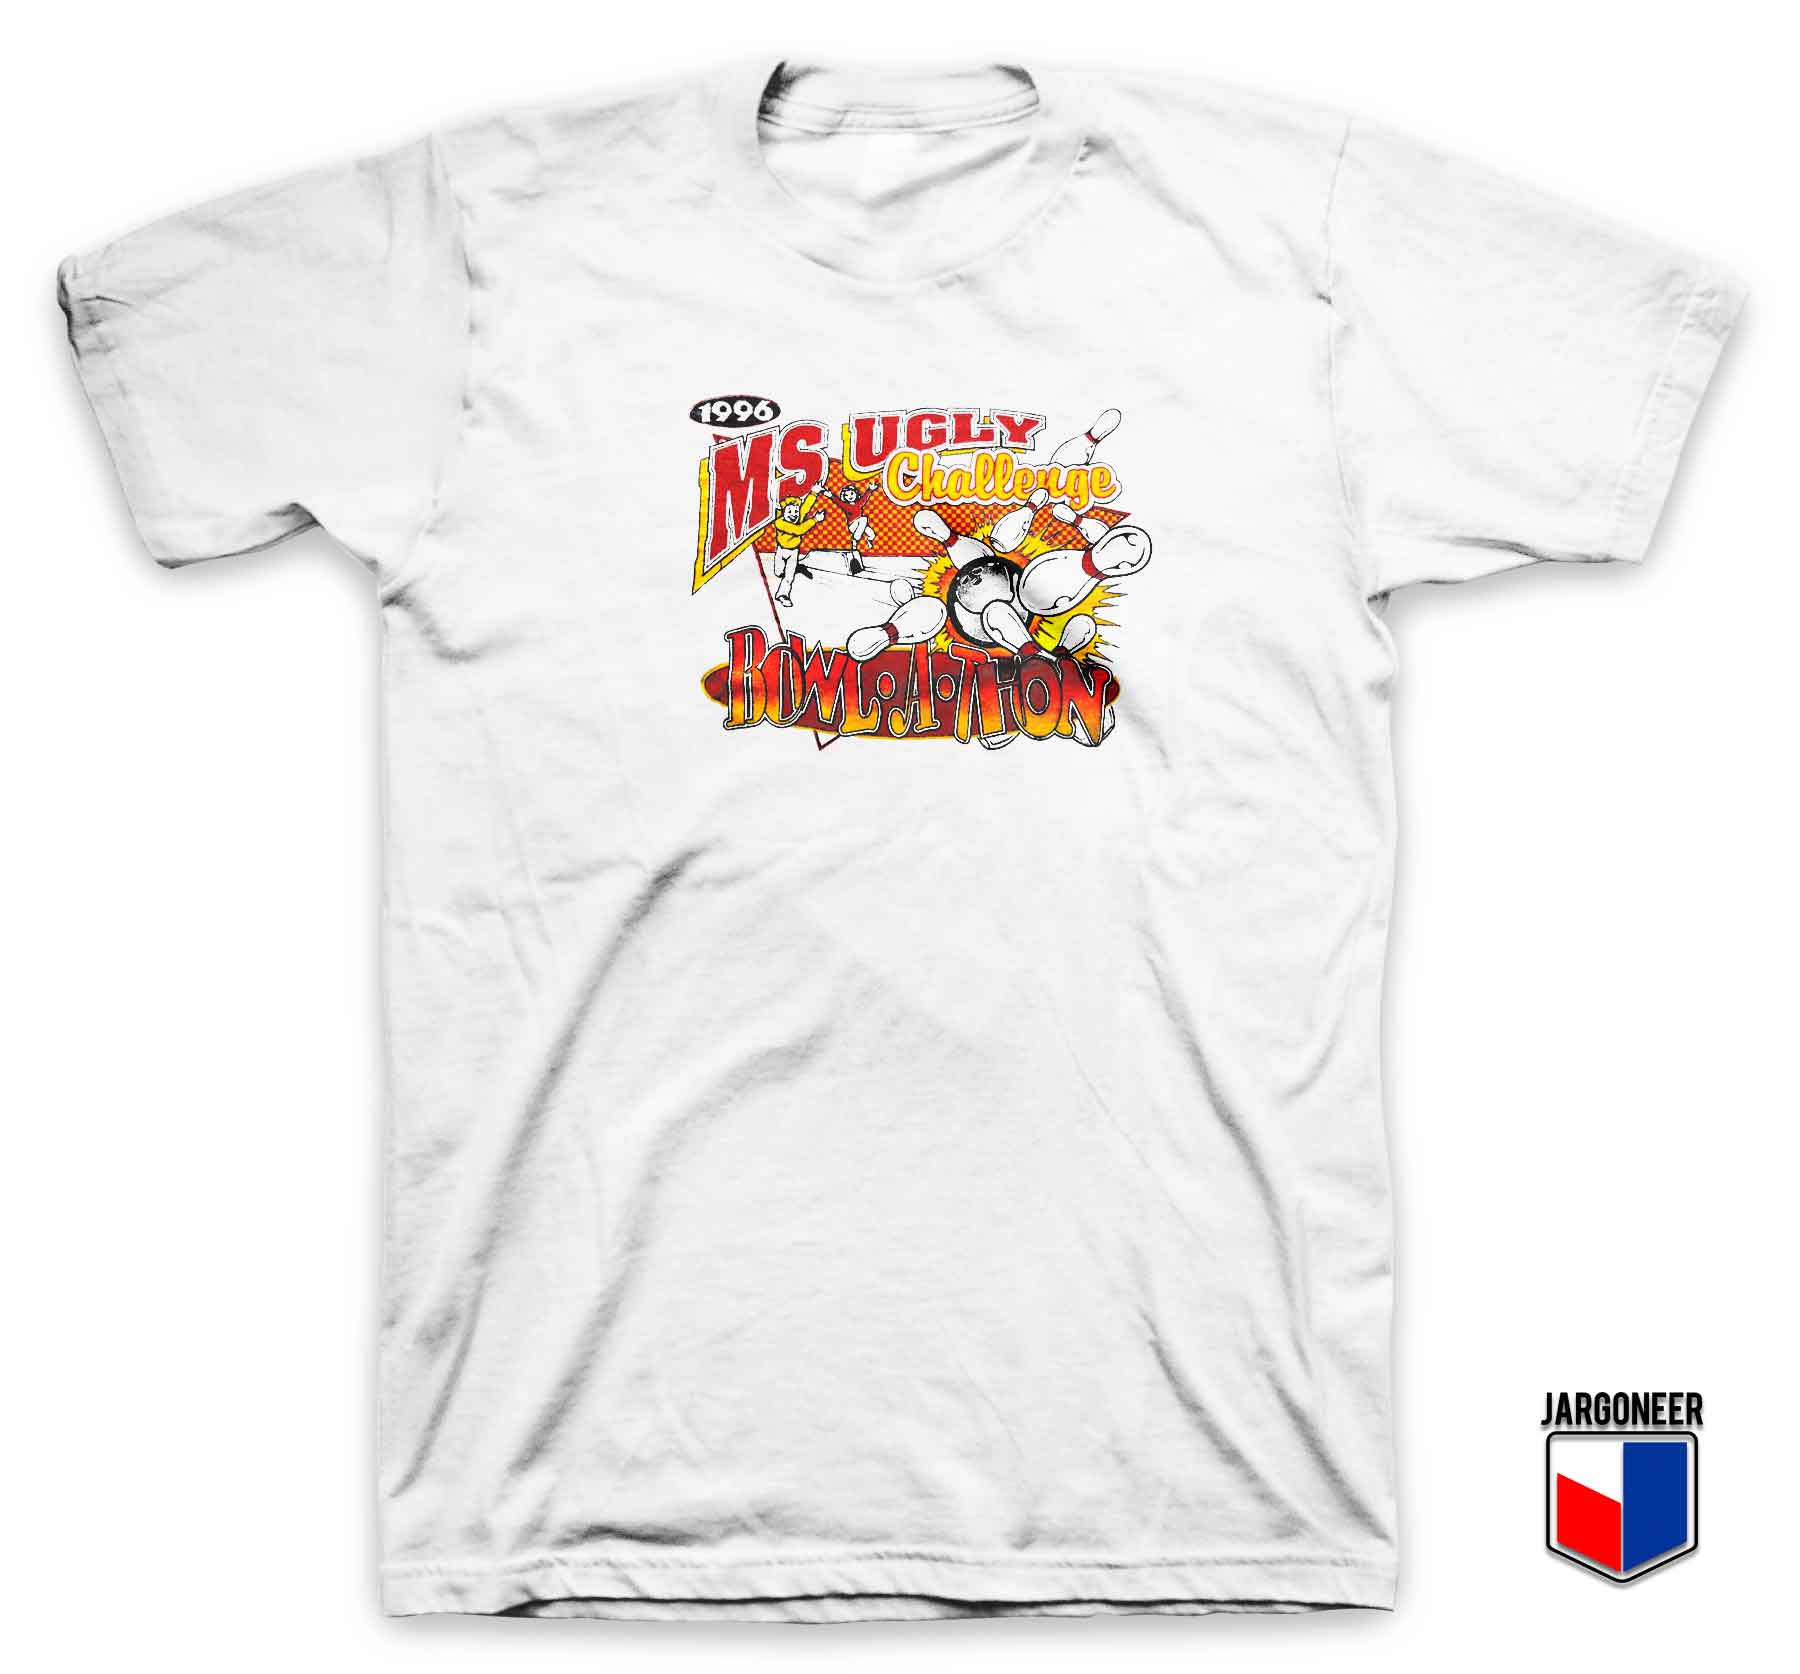 Bowl A Thon Challenge 1996 - Shop Unique Graphic Cool Shirt Designs